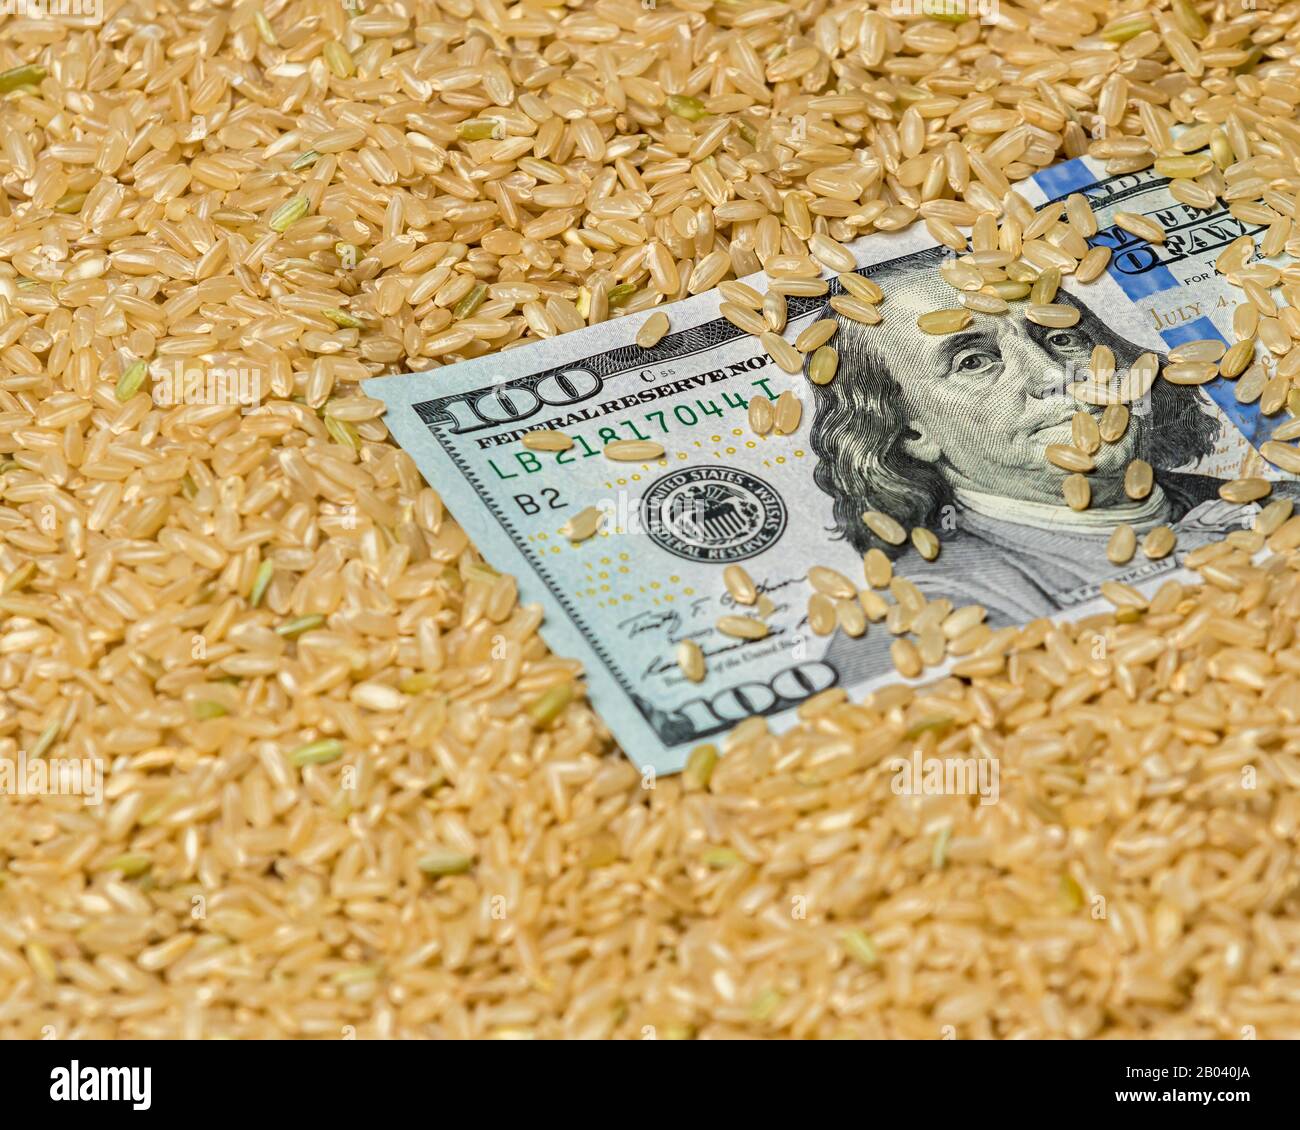 Gros plan de graines de riz brun à grains entiers entourant la facture américaine de 100 dollars. Concept de l'industrie du riz des États-Unis d'Amérique, commerce, prix du marché Banque D'Images